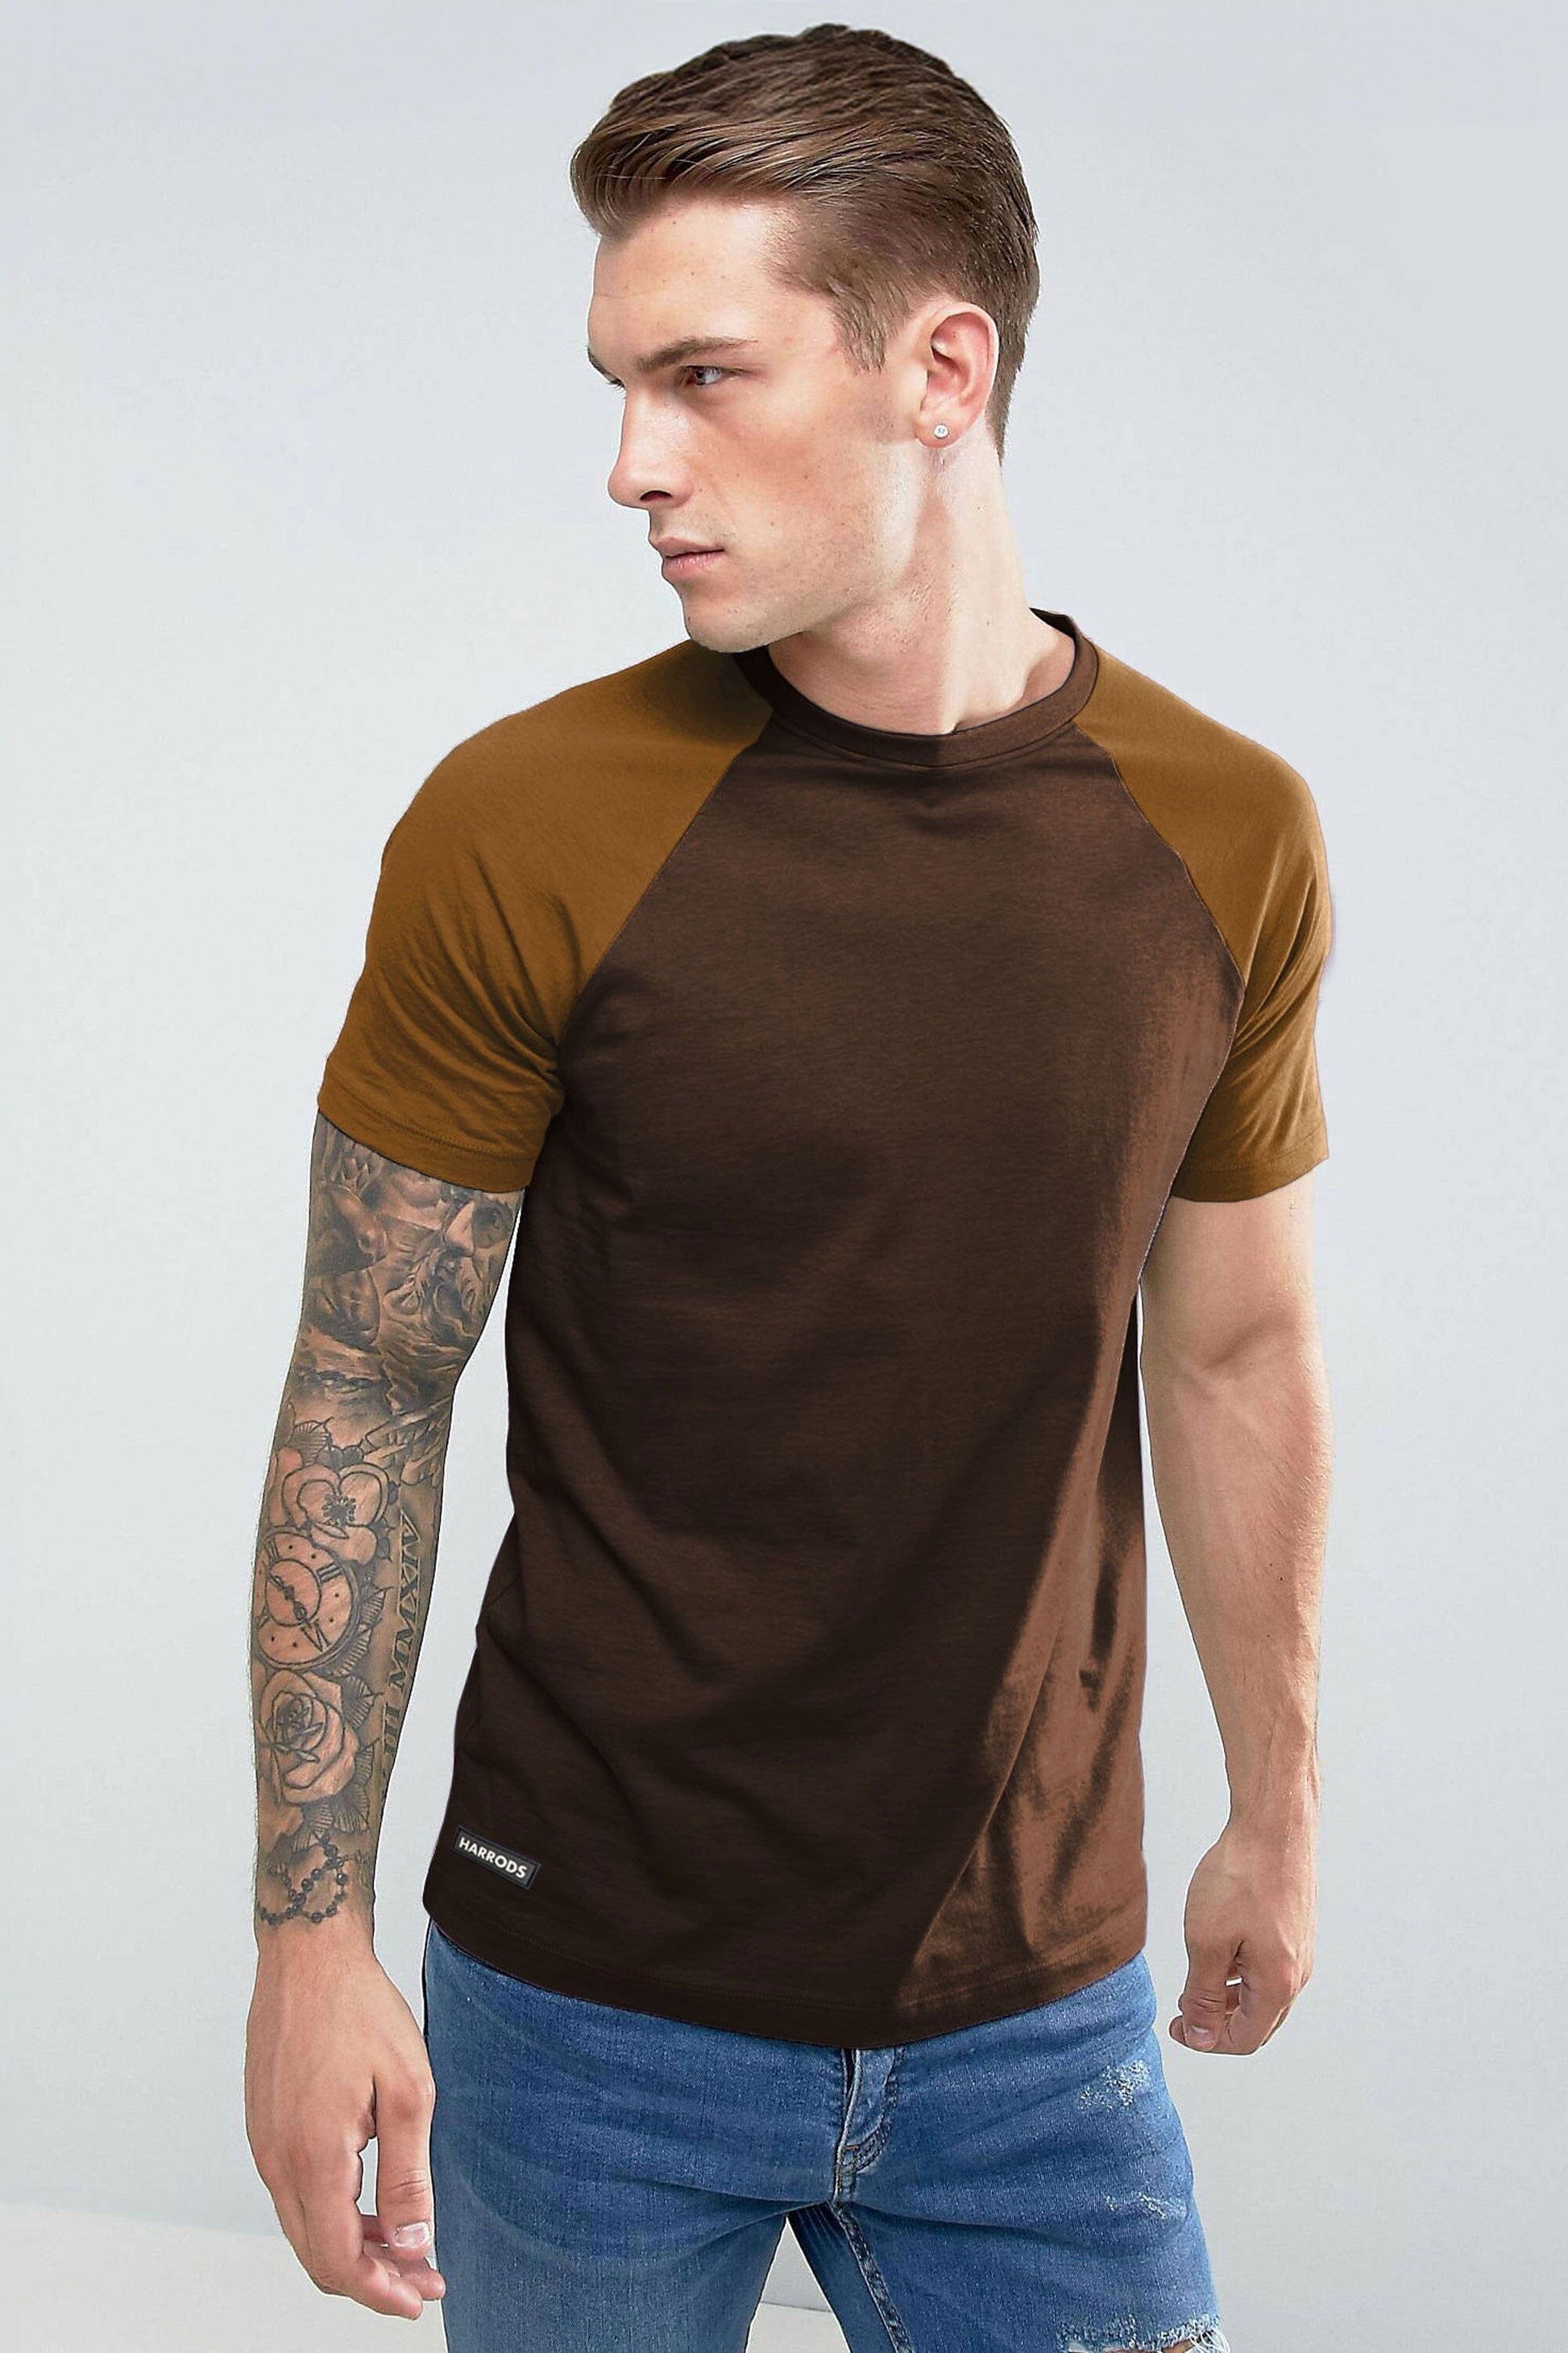 Harrods Men's Contrast Sleeve Style Crew Neck Tee Shirt Men's Tee Shirt IBT 